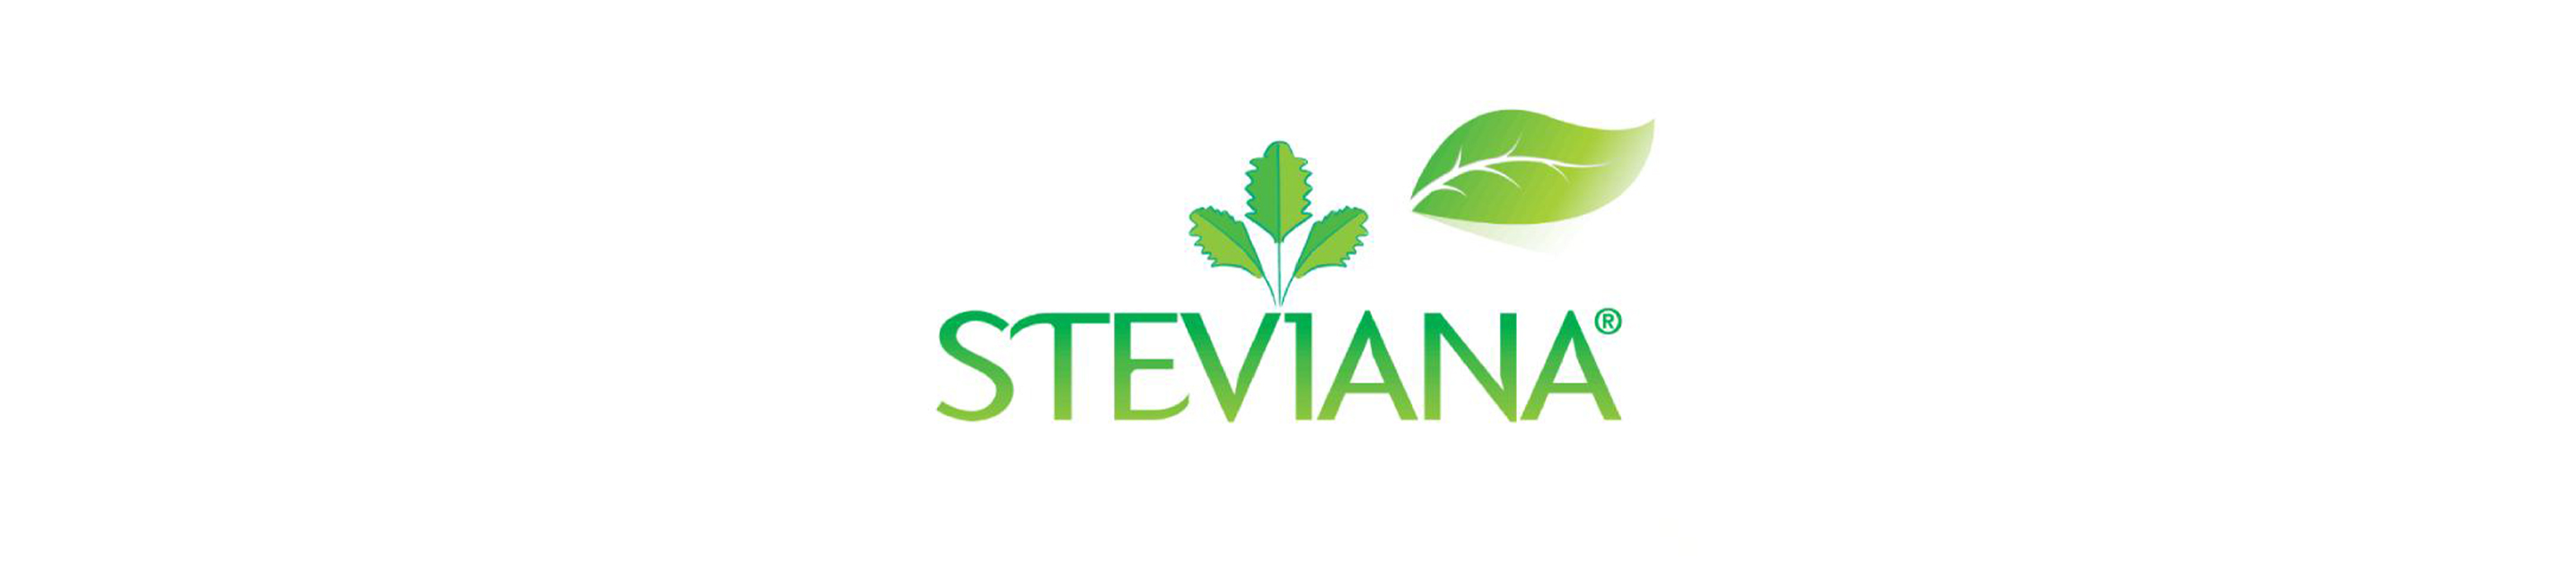 Steviana